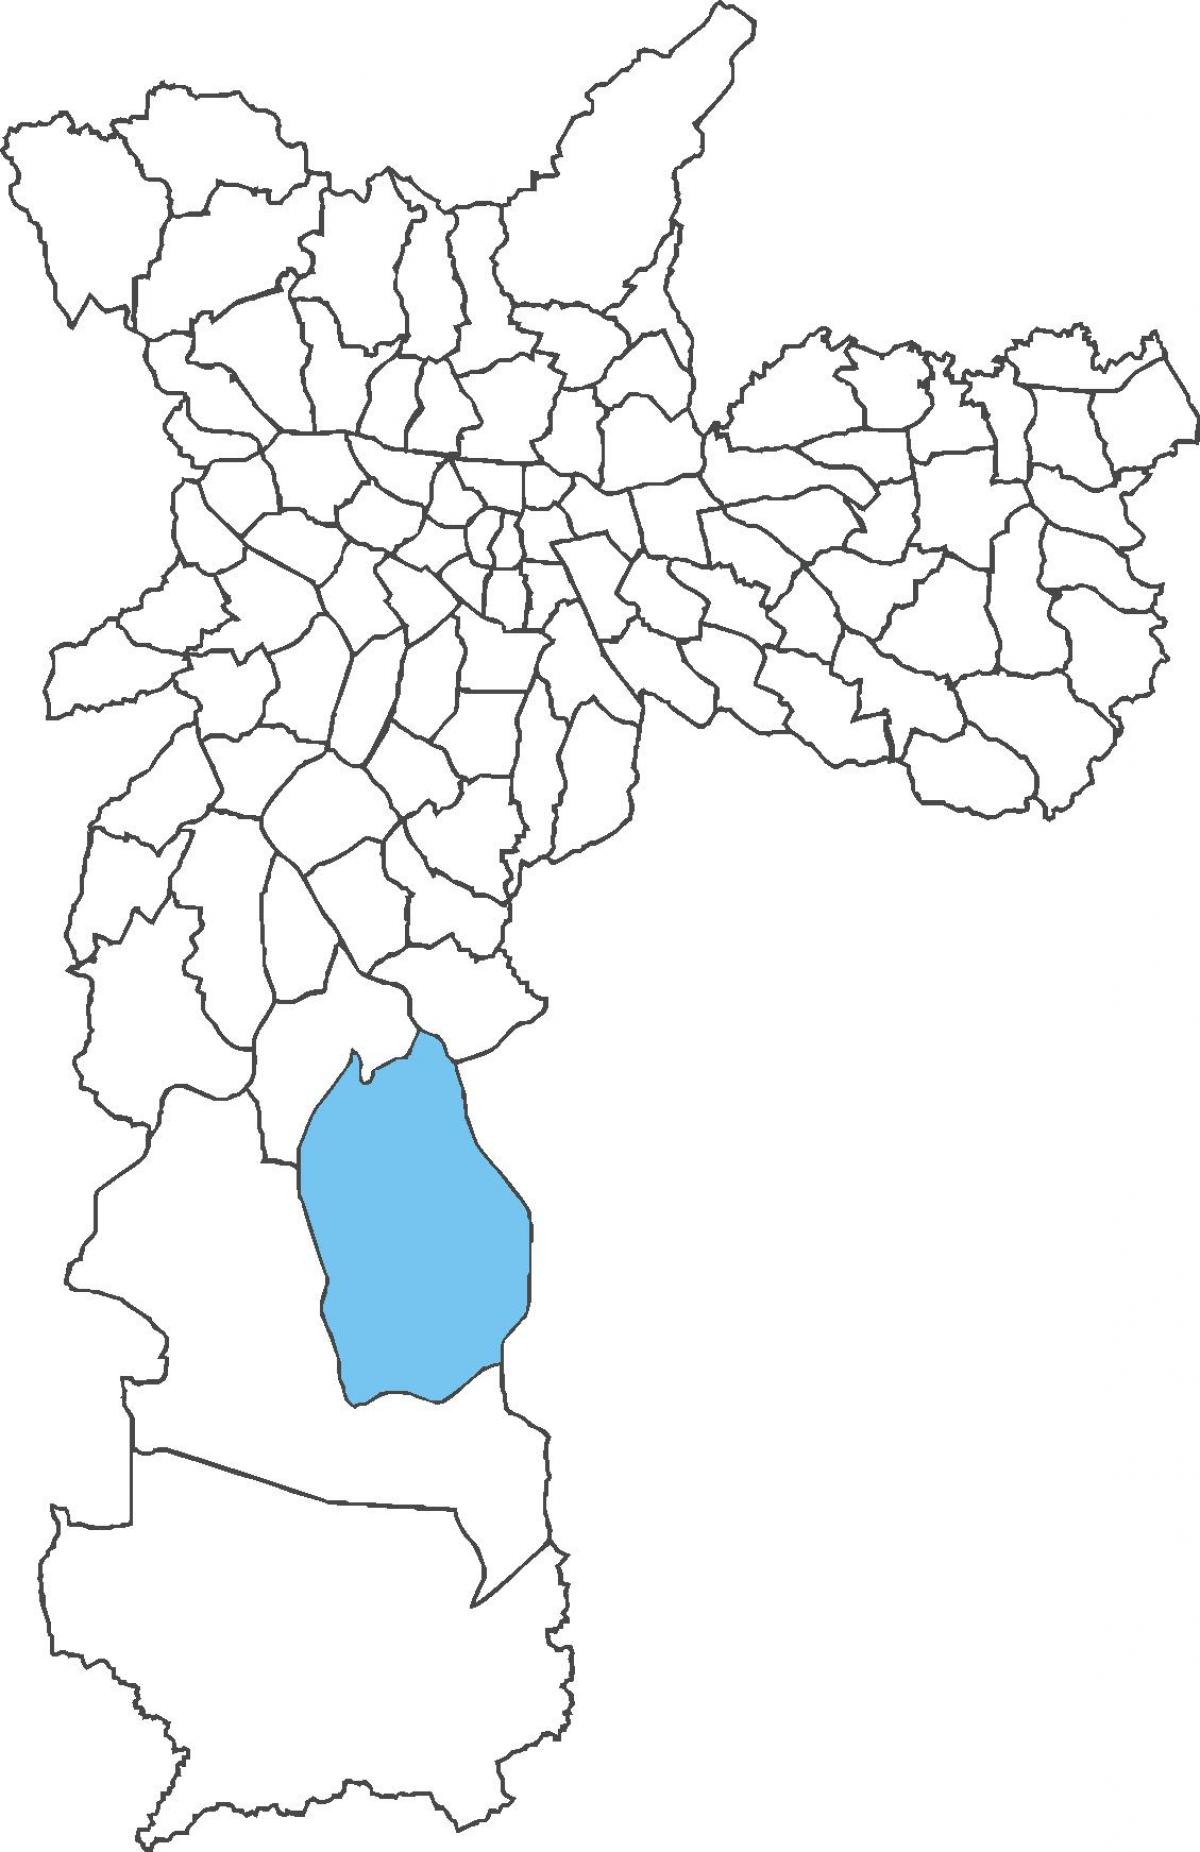 Карта на район Grajaú